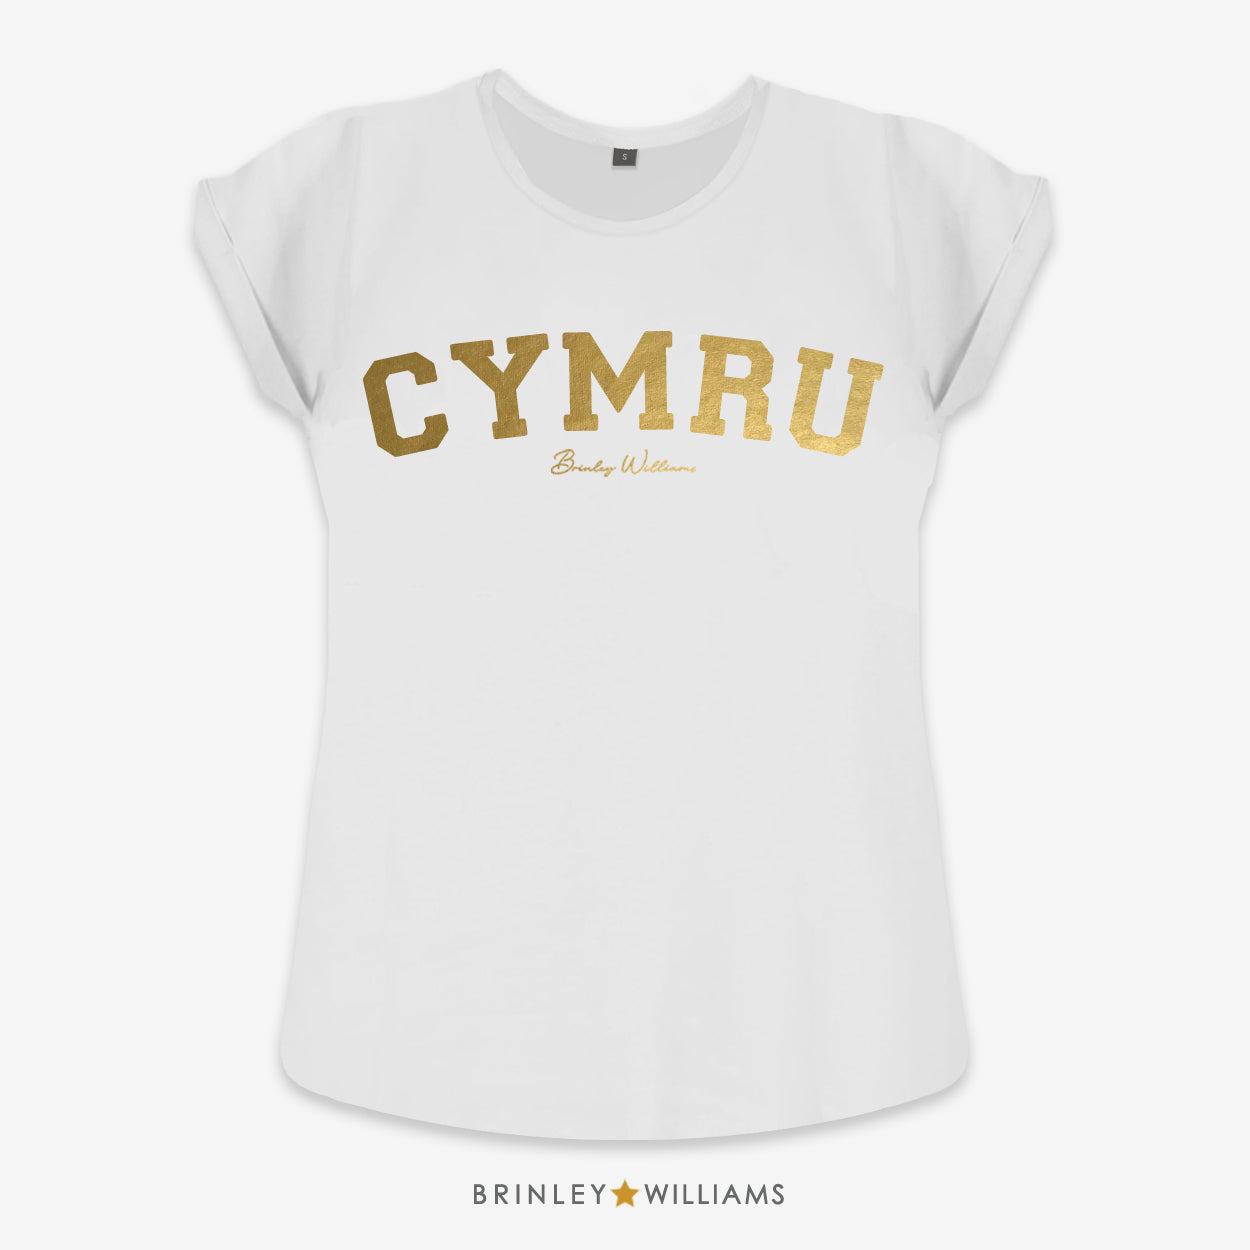 Cymru Rolled Sleeve T-shirt - White